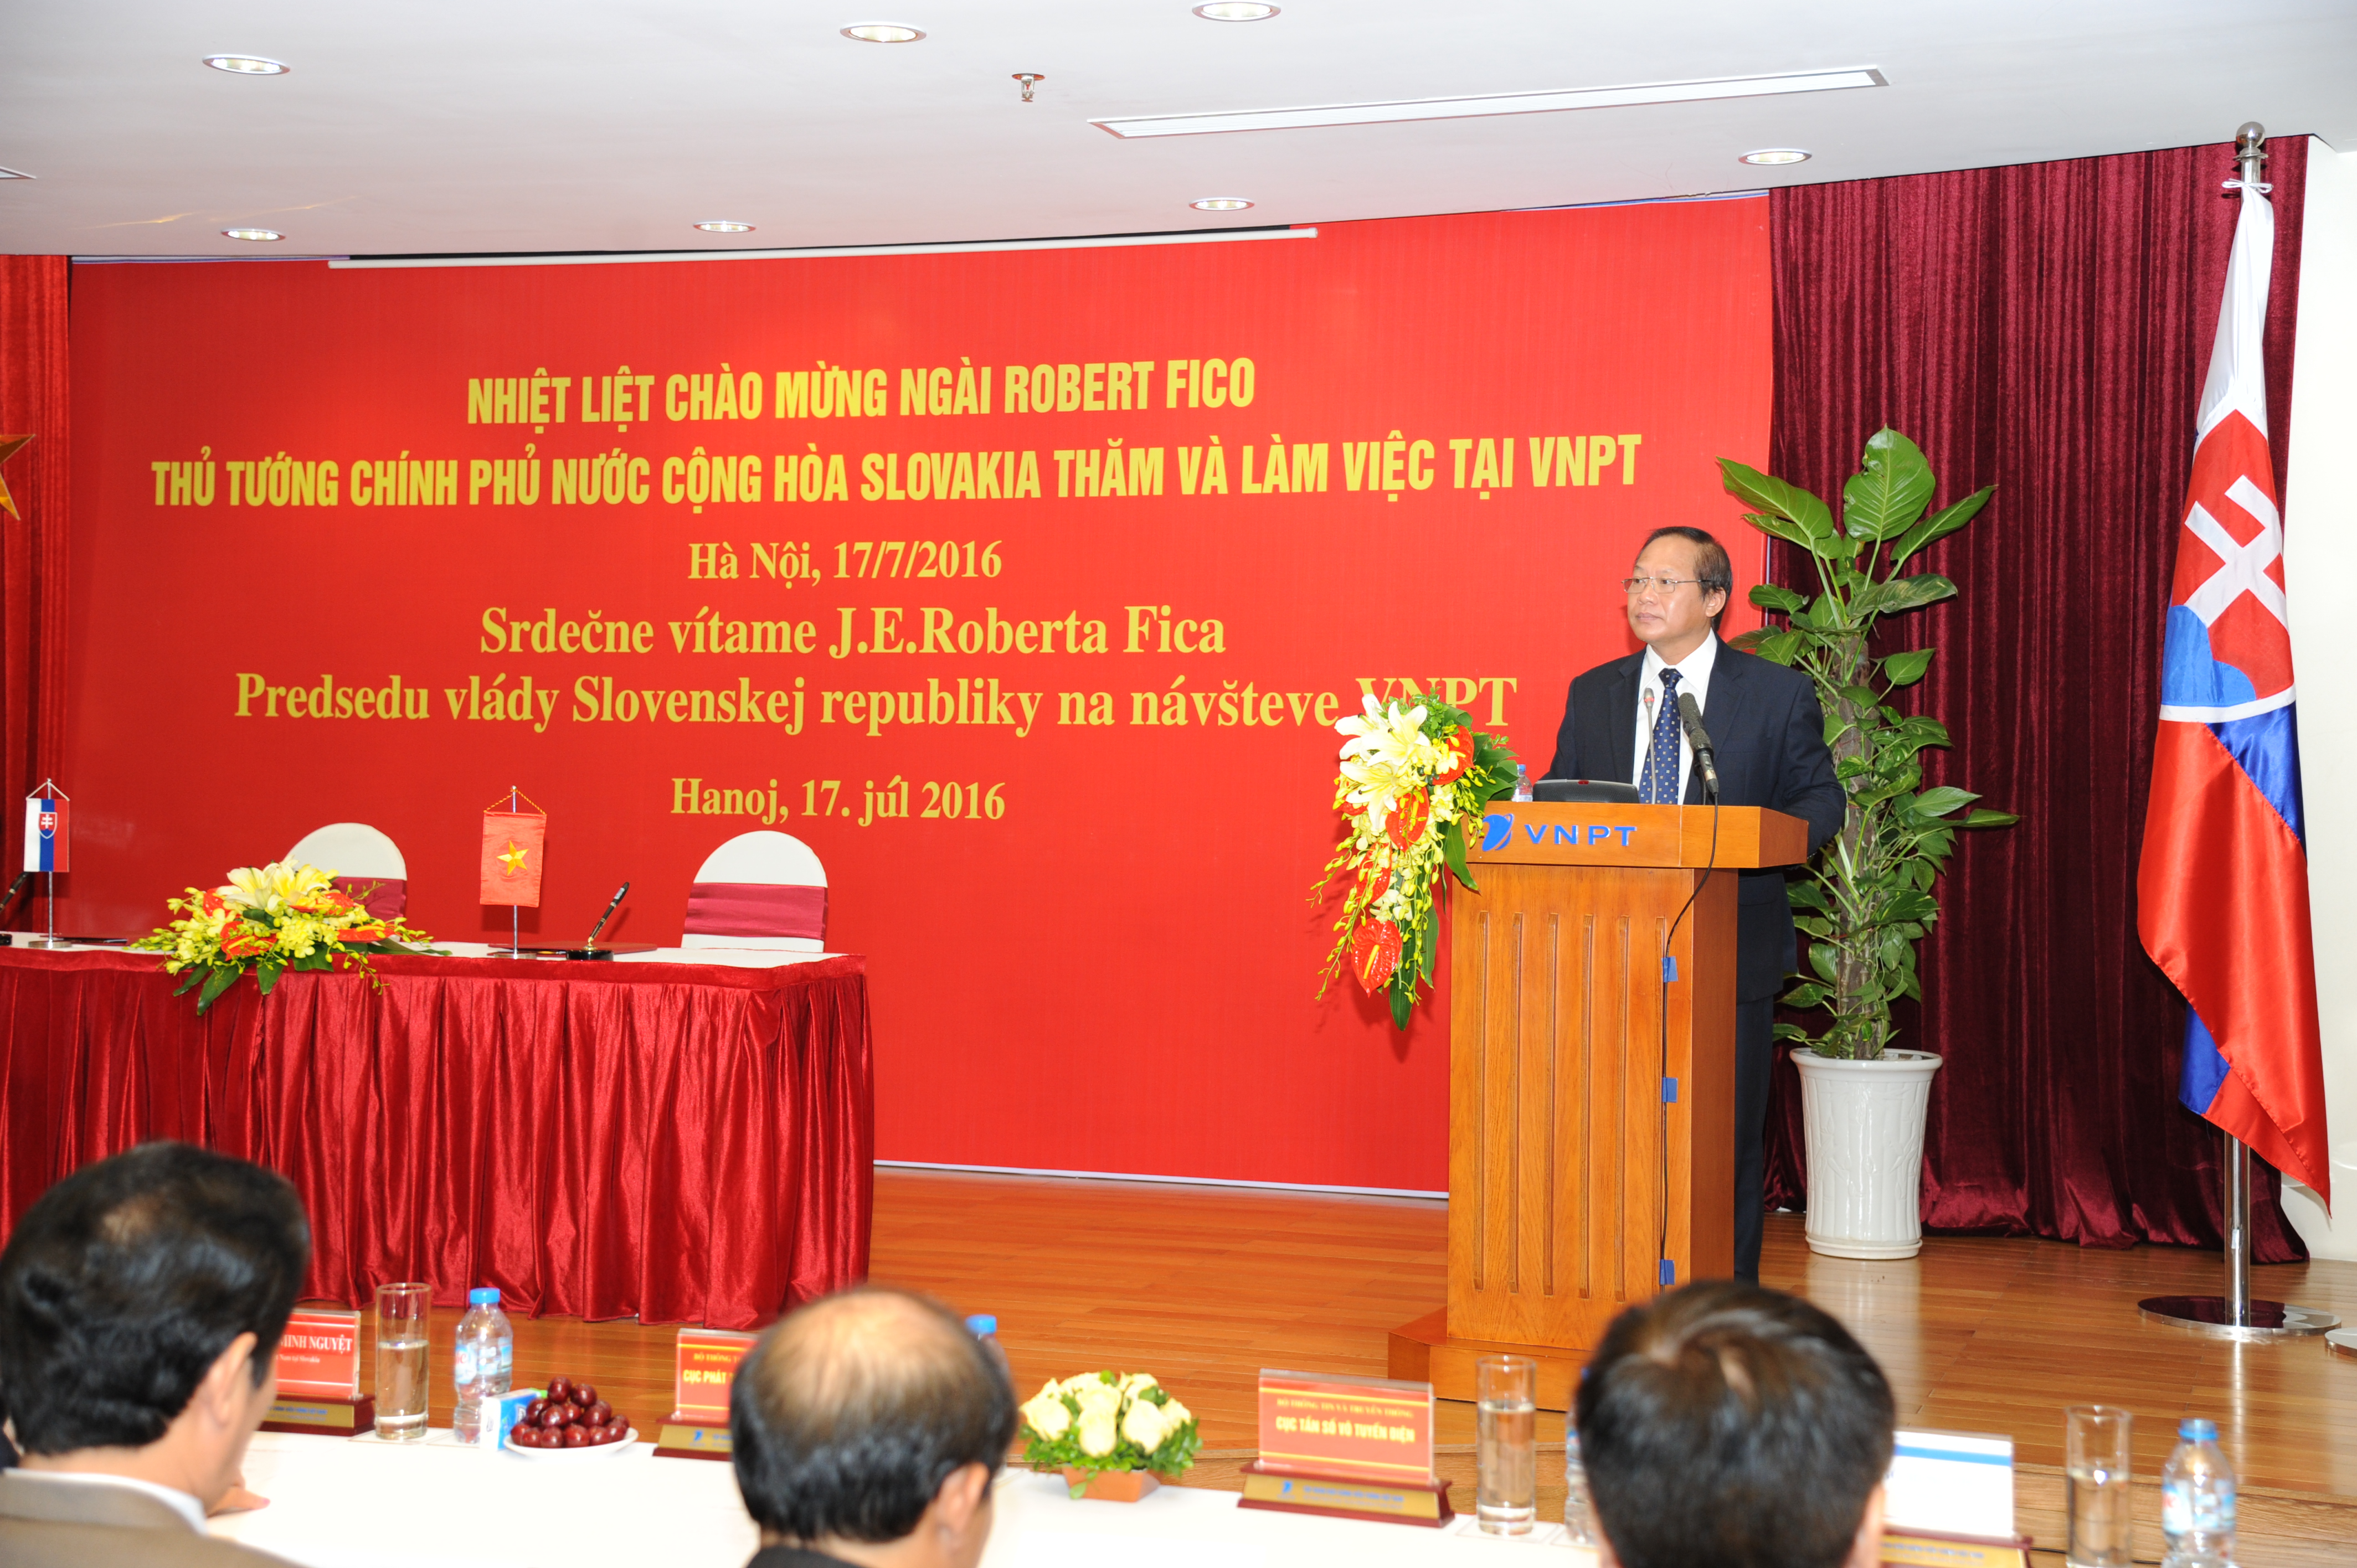  Bộ trưởng Bộ TT&TT Trương Minh Tuấn cho biết cơ hội hợp tác giữa hai nước là rất lớn. Việt Nam đã sẵn sàng cho hội nhập quốc tế